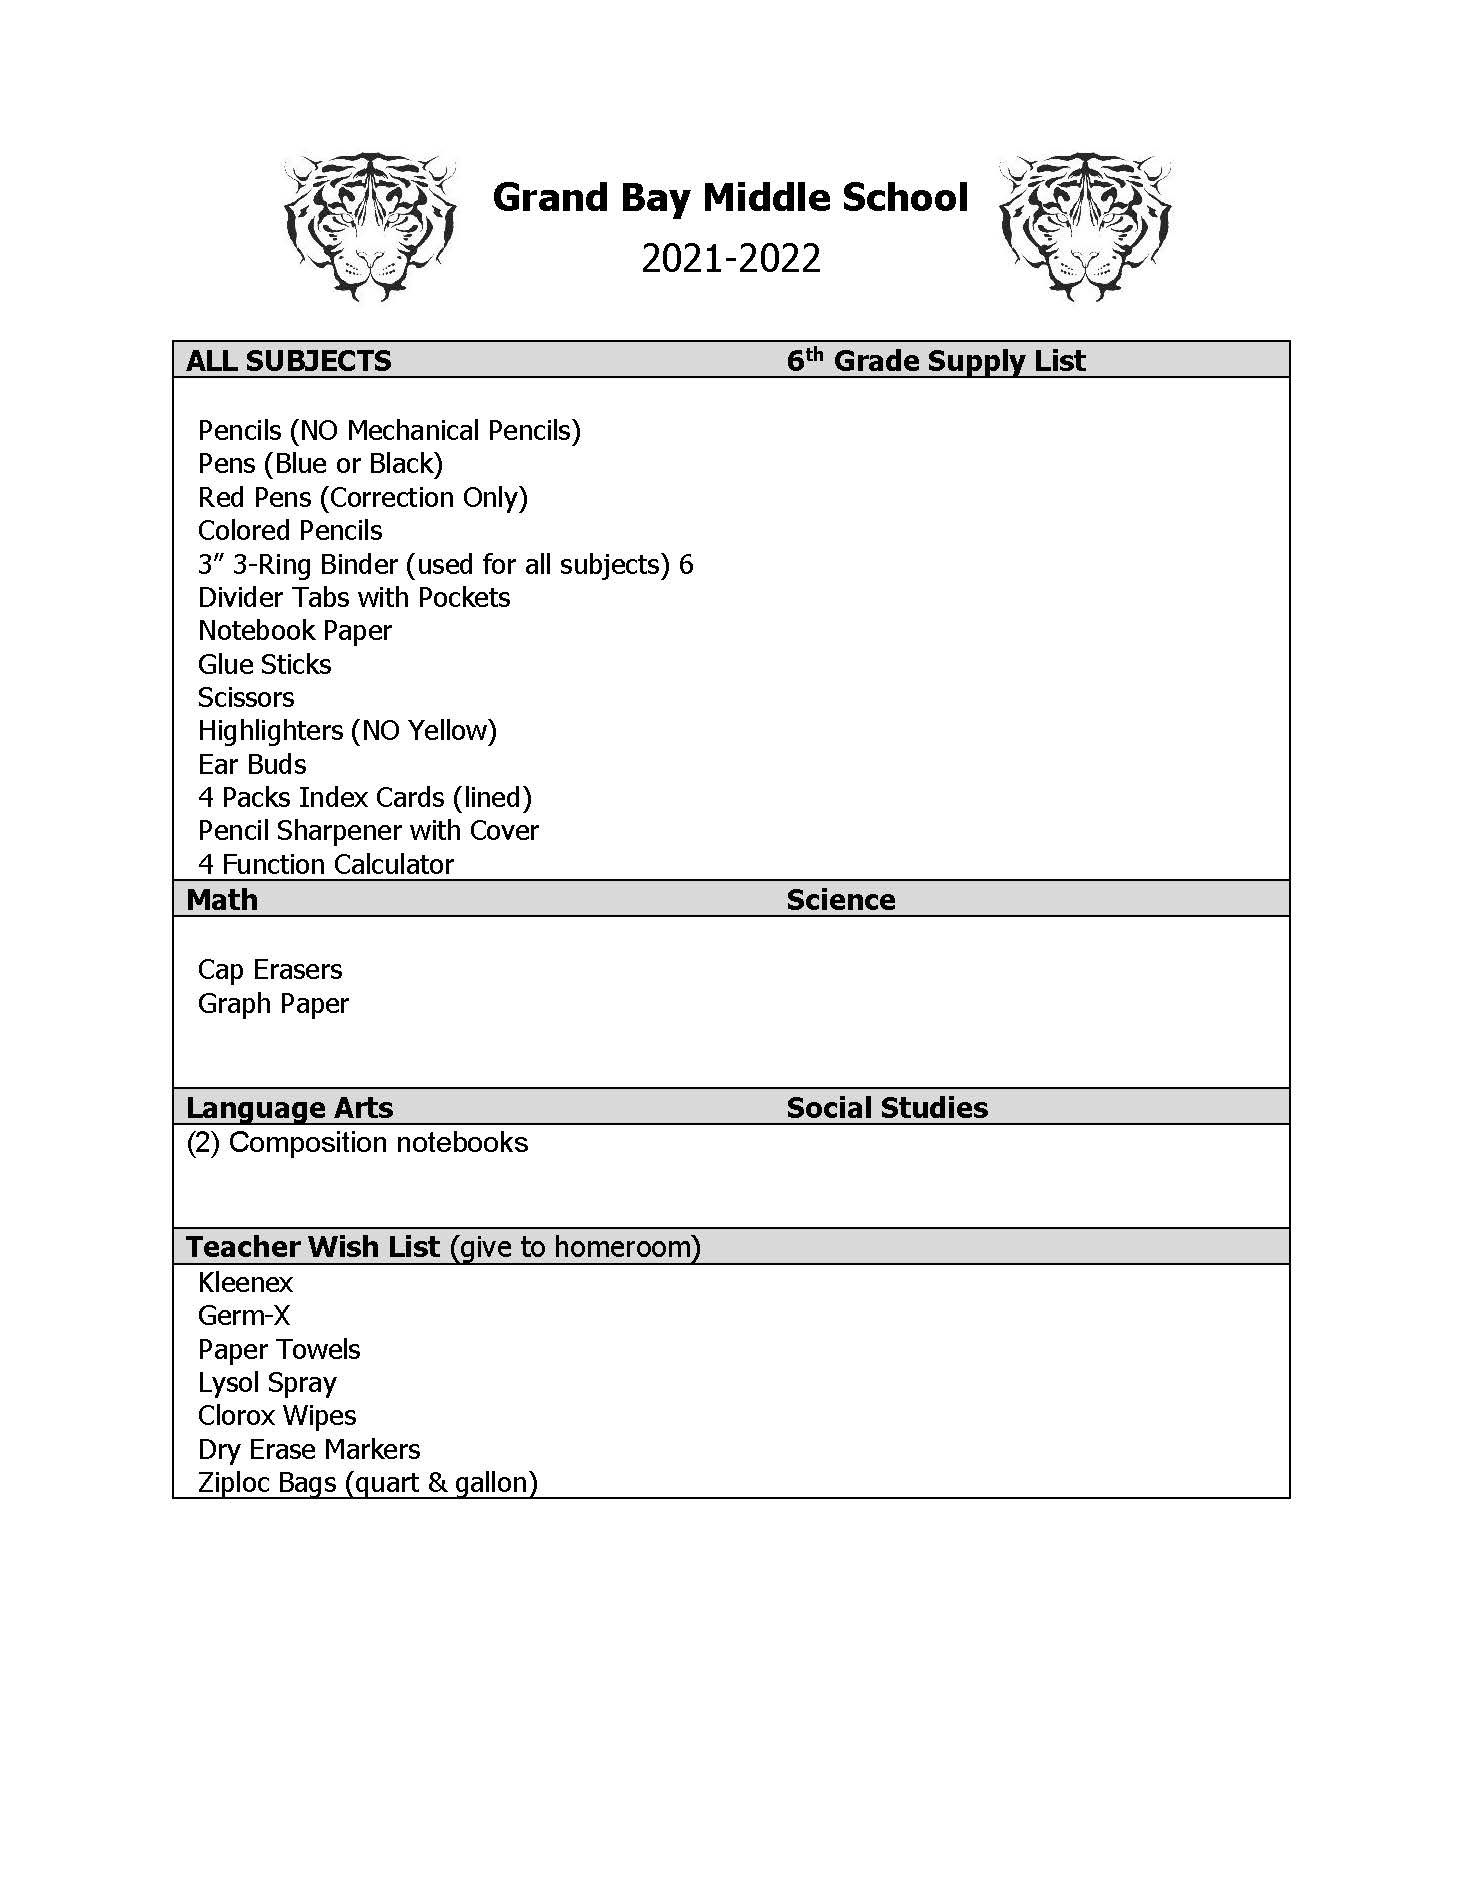 21-22 6th Grade Supply List